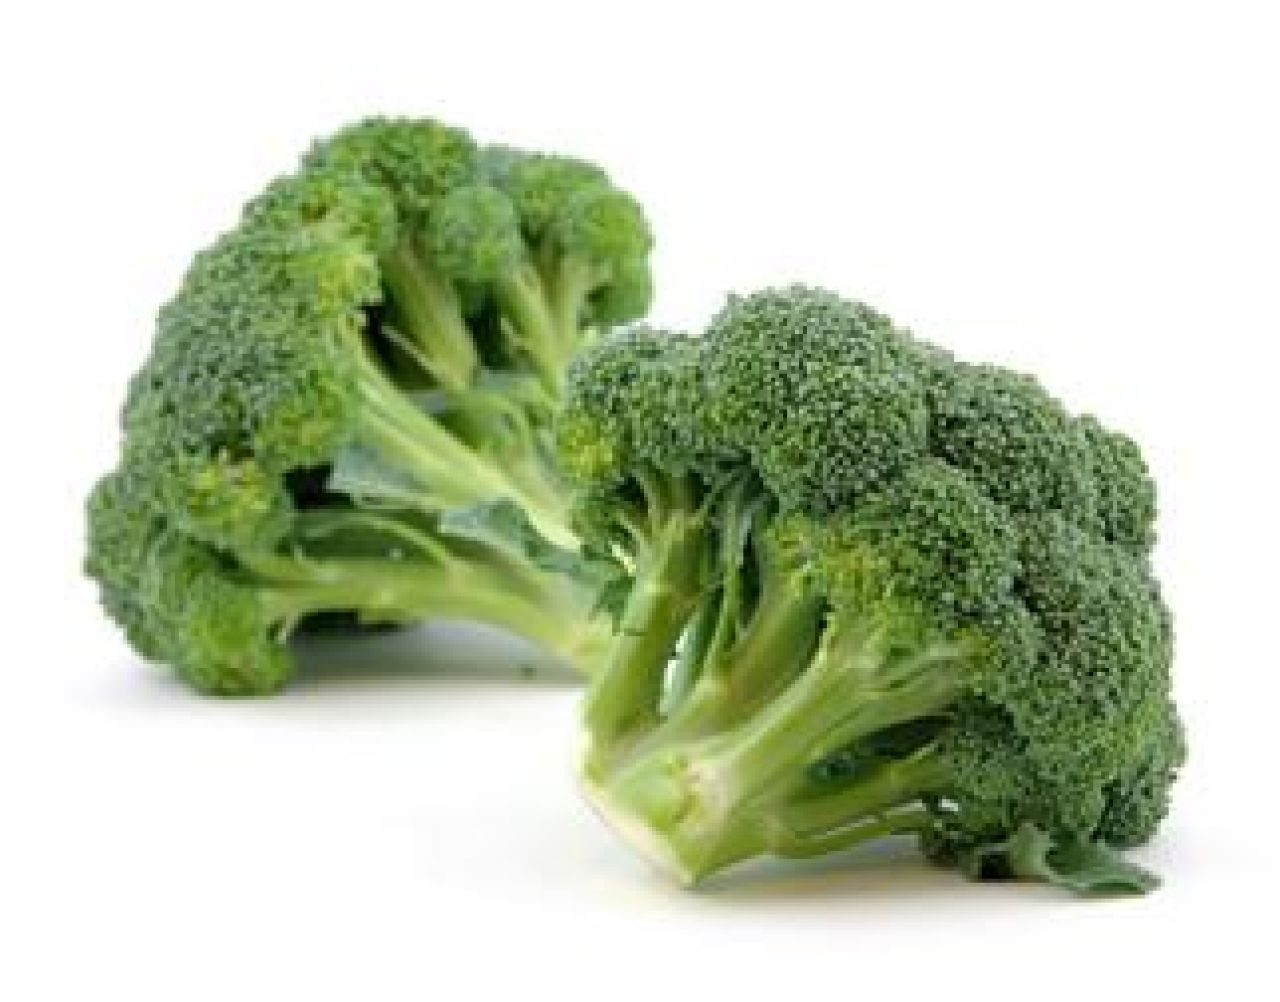 Brokuły - zielona skarbnica witamin i zdrowia!